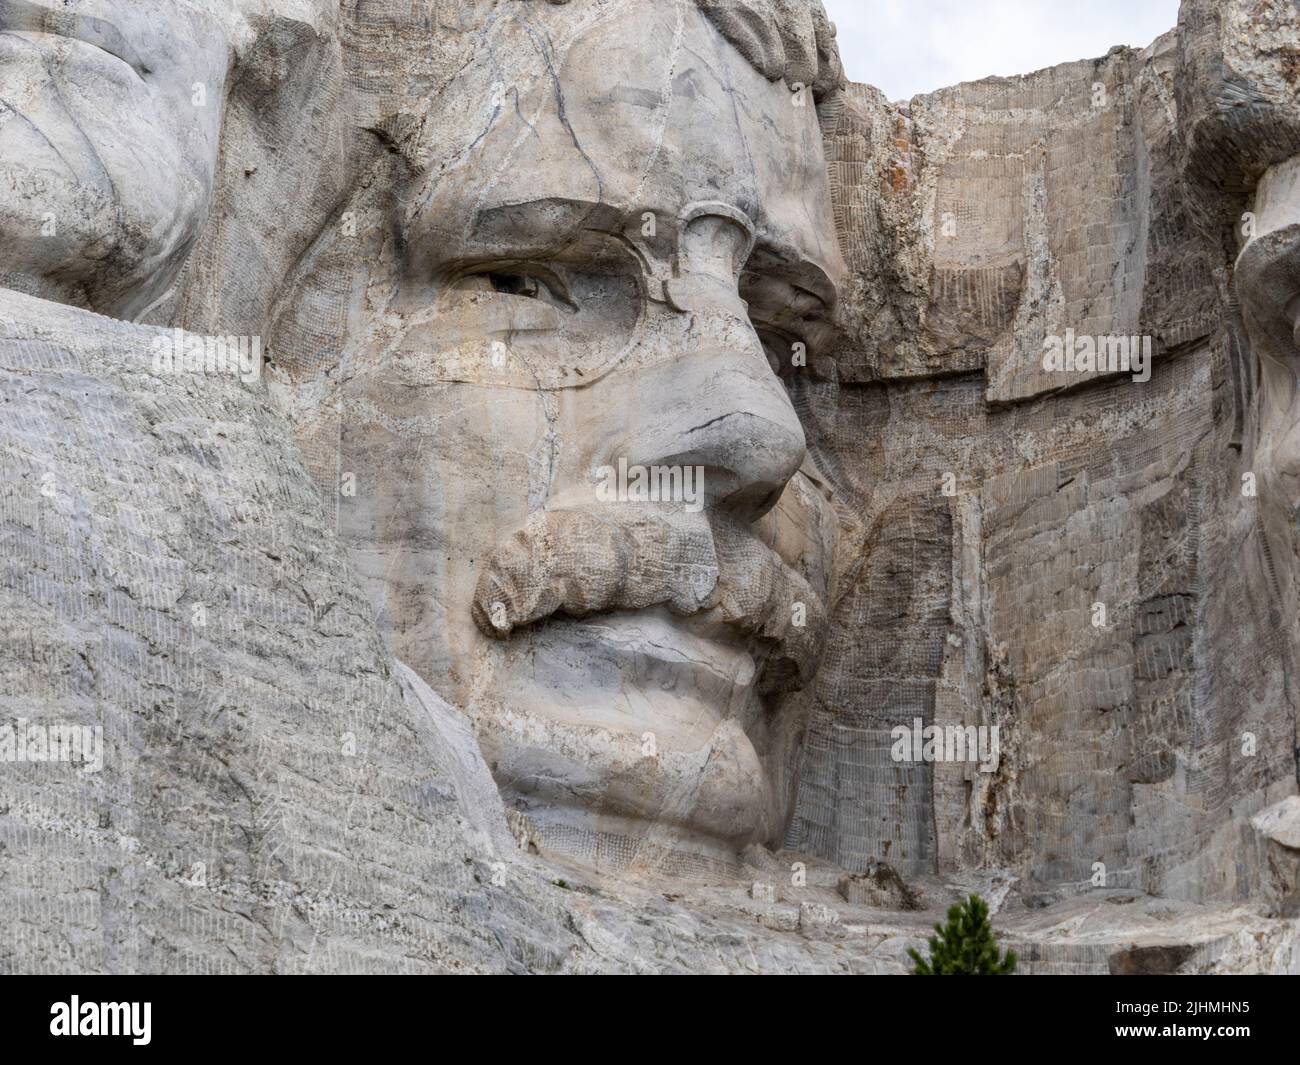 Gros plan de la sculpture Roosevelt au Mount Rushmore National Memorial dans les Black Hills du Dakota du Sud des États-Unis Banque D'Images